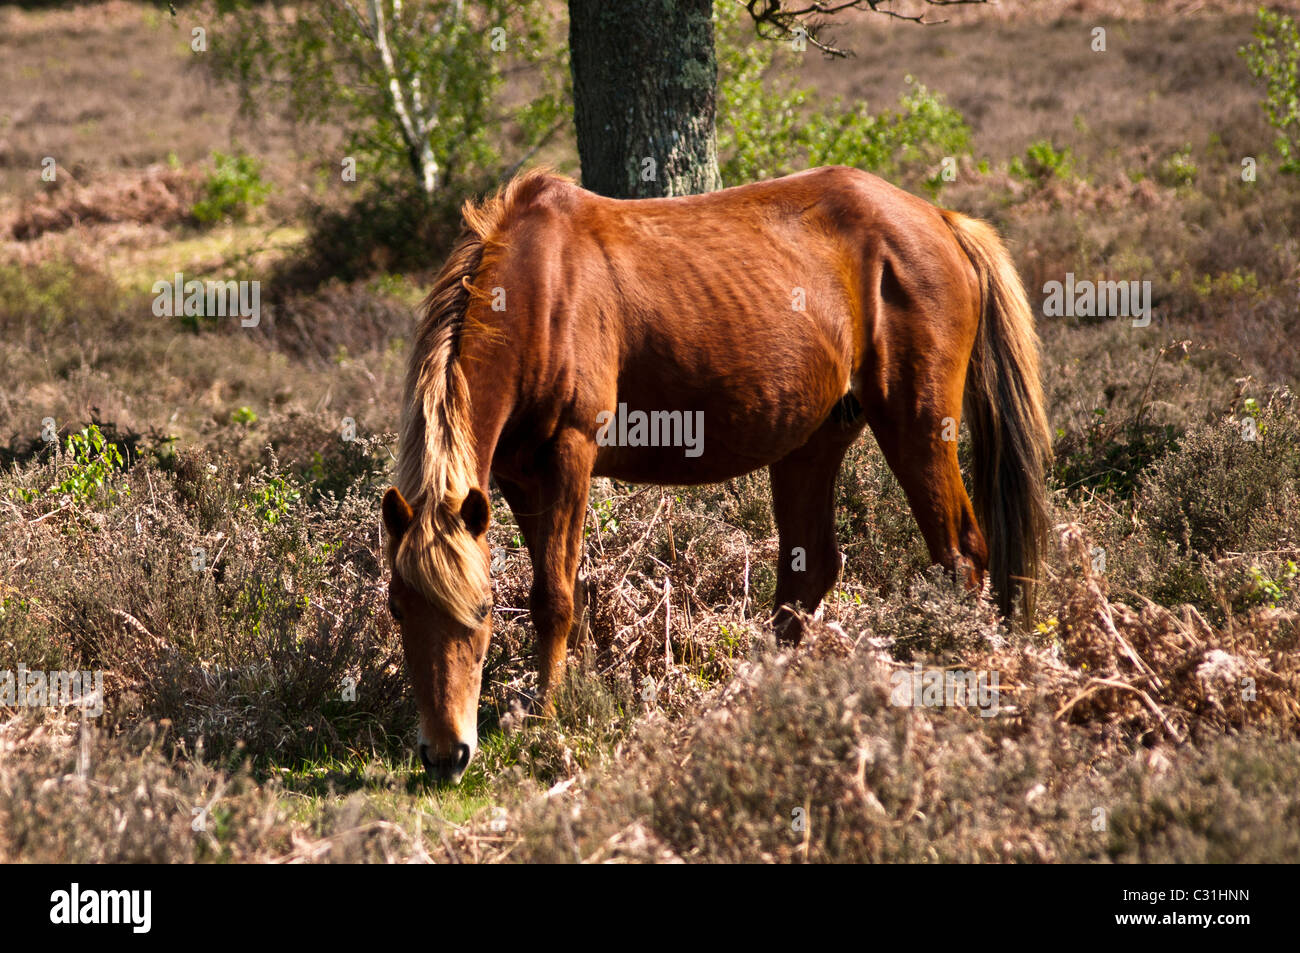 Chestnut New Forest Pony grazing Stock Photo